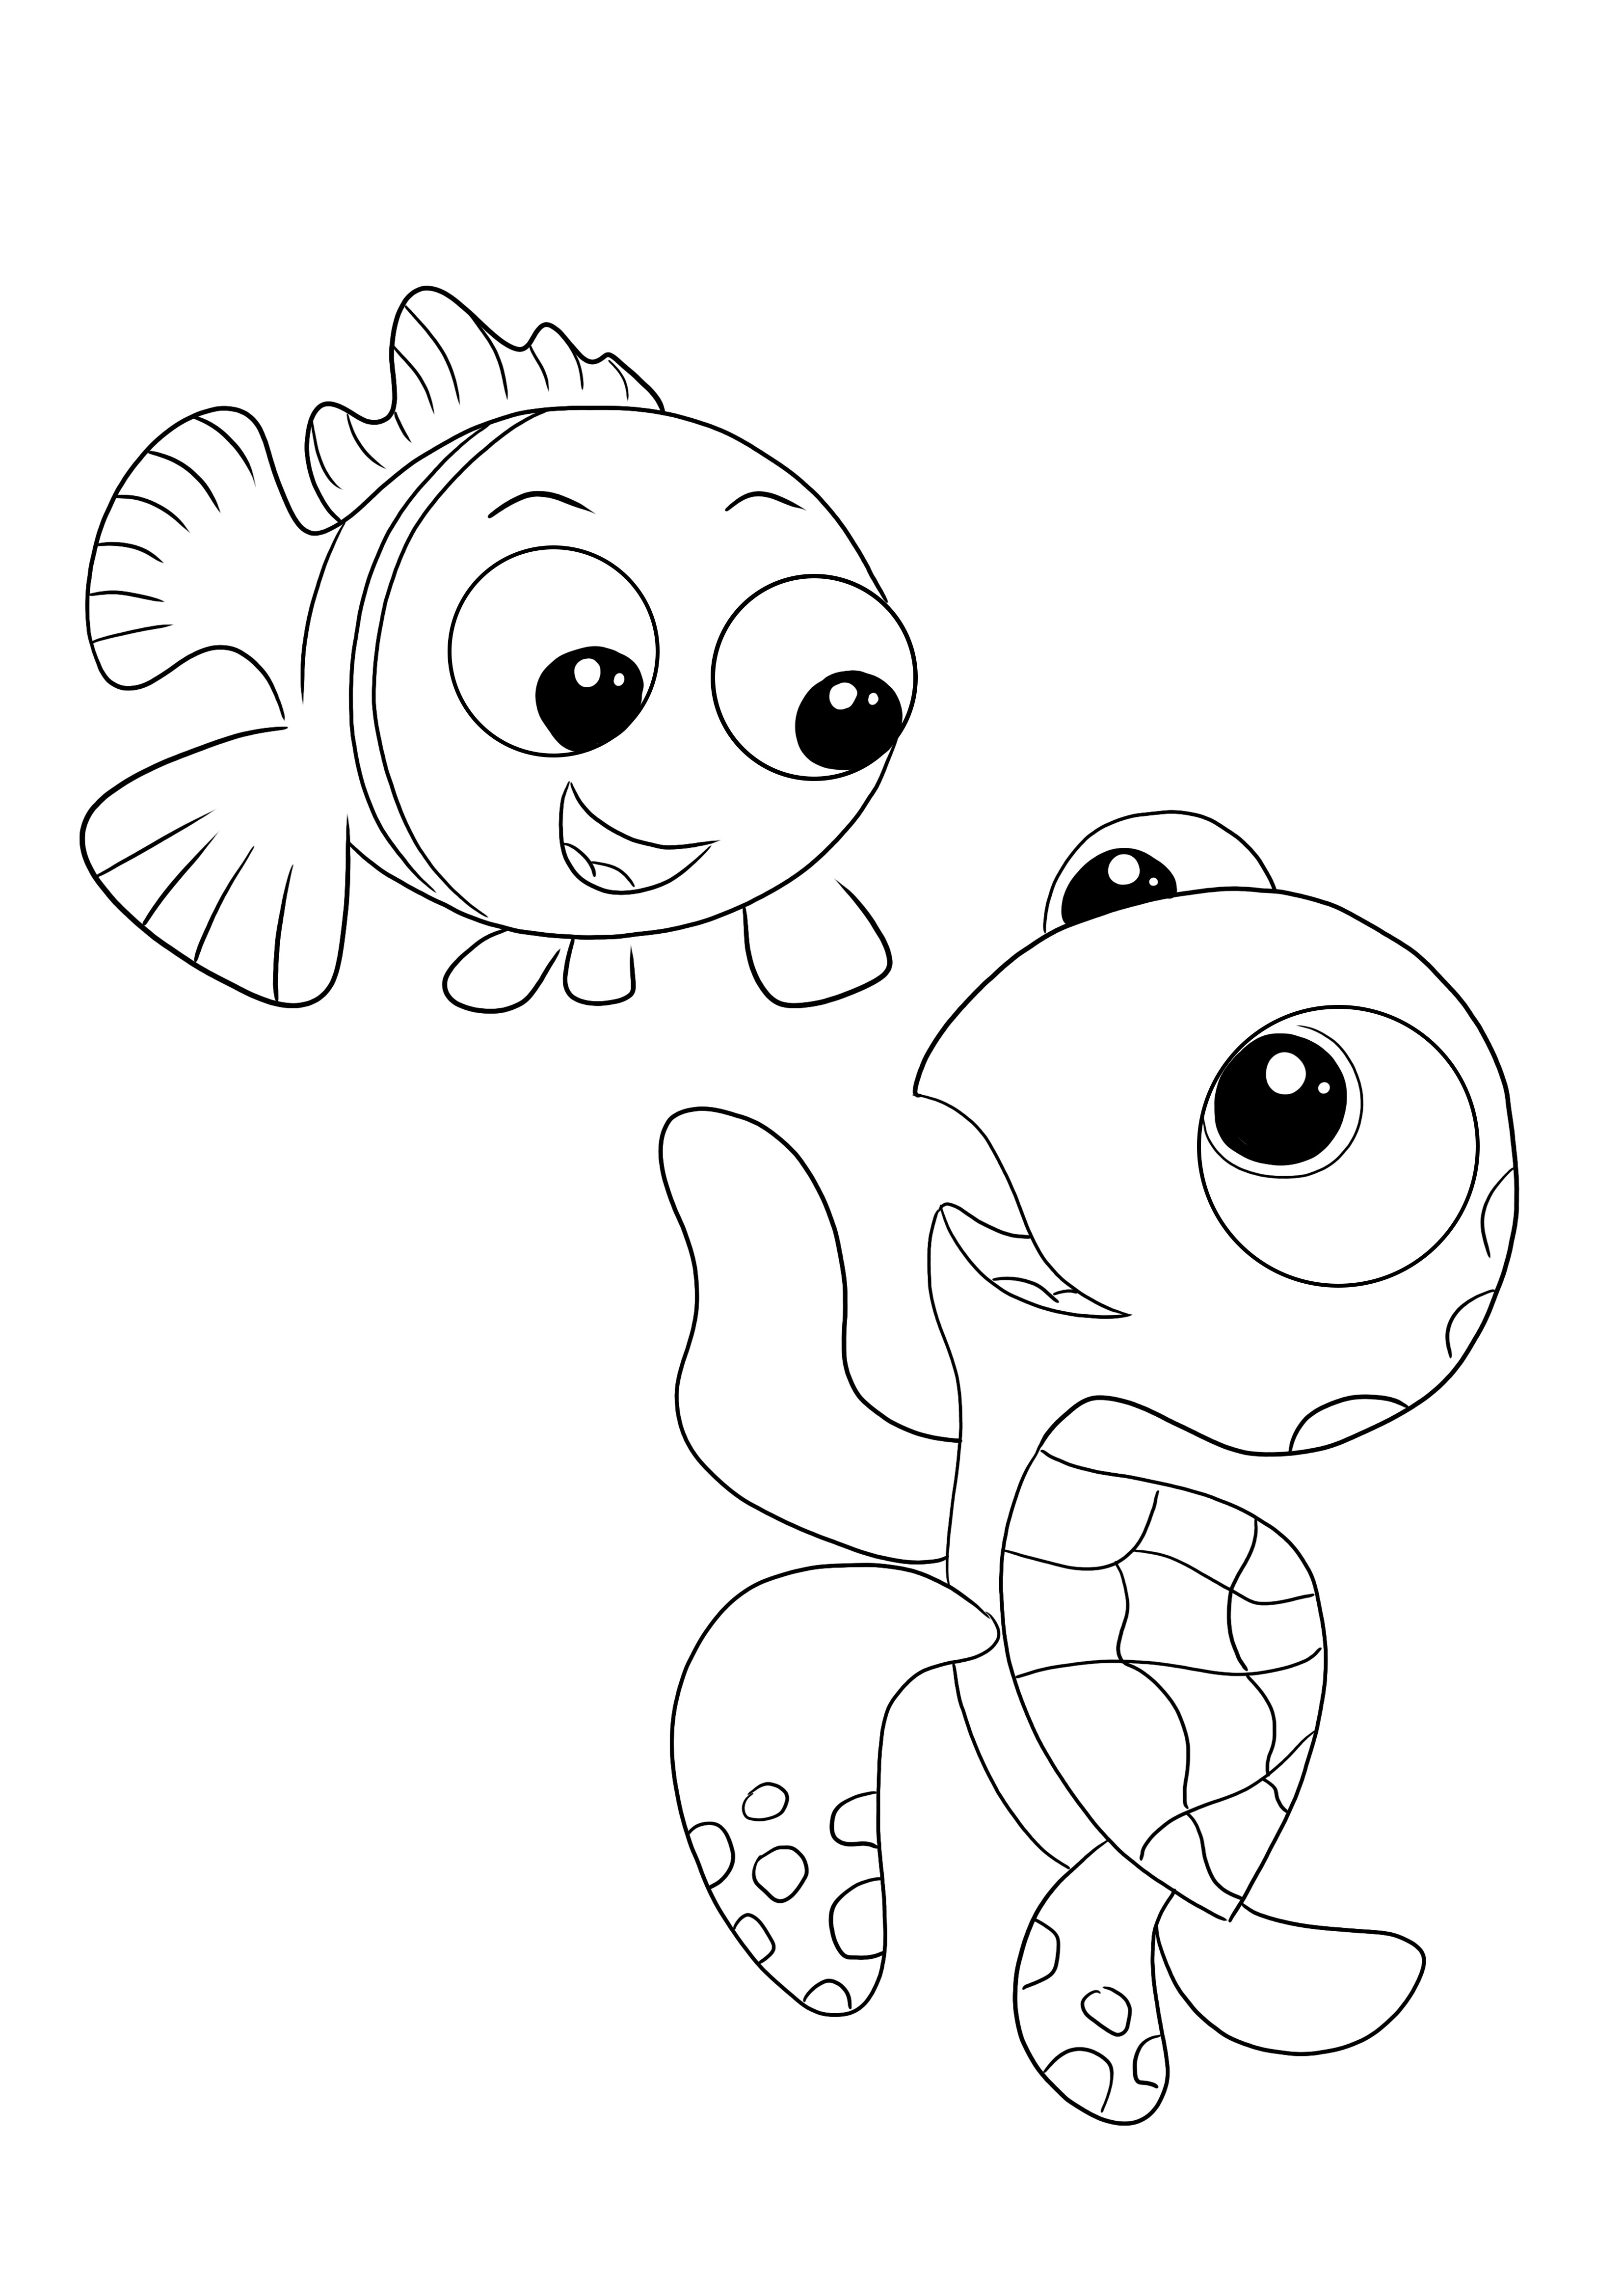 Livre para colorir e imprimir imagem para colorir Crush e Nemo para crianças